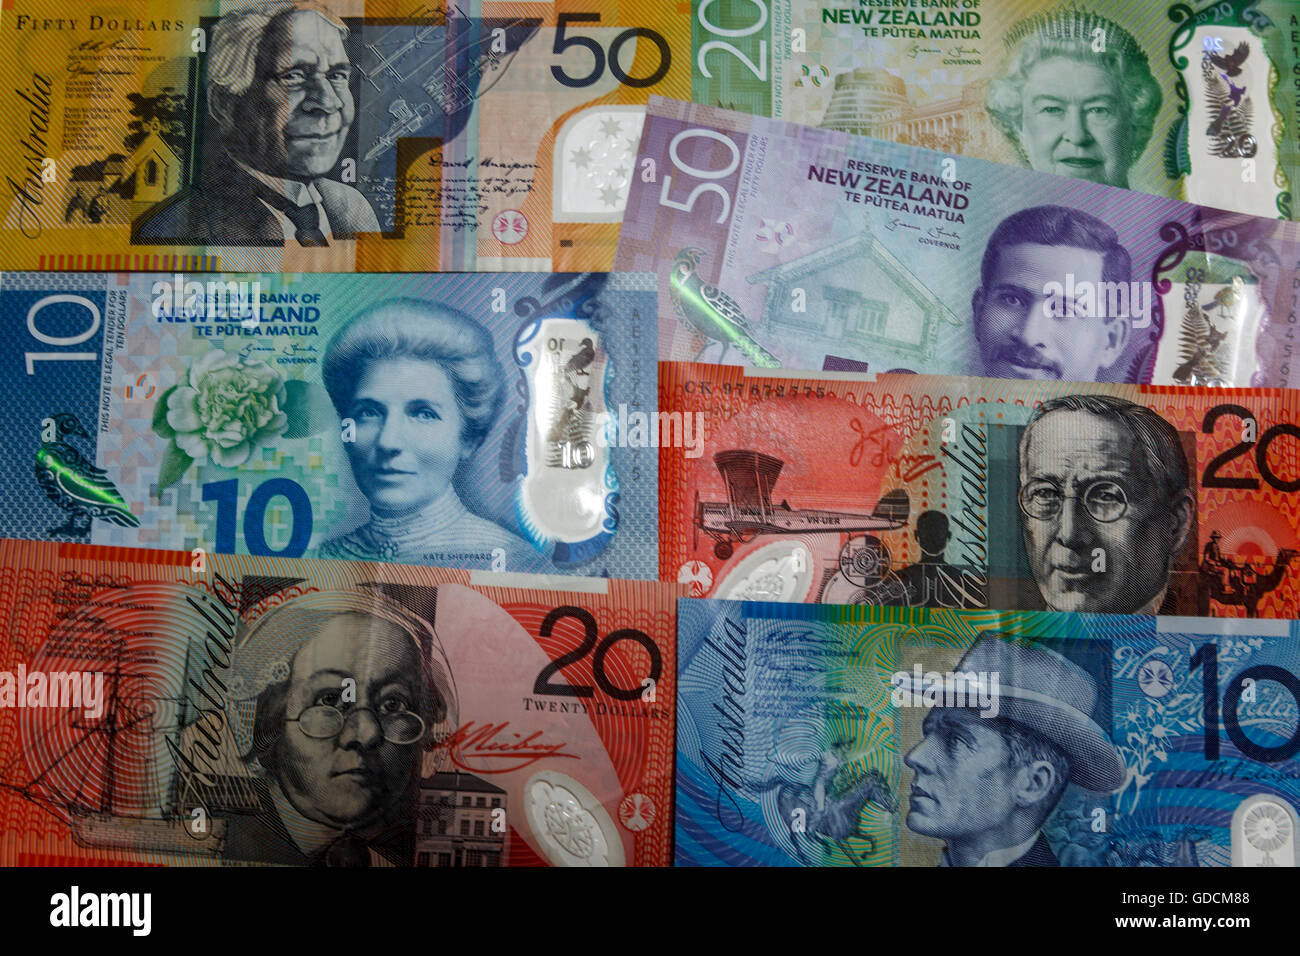 Neue zweite Generation Plastikpolymer New Zealand $50 $10 $20 Kiwi-Dollar-Banknoten und australische Banknoten Stockfoto